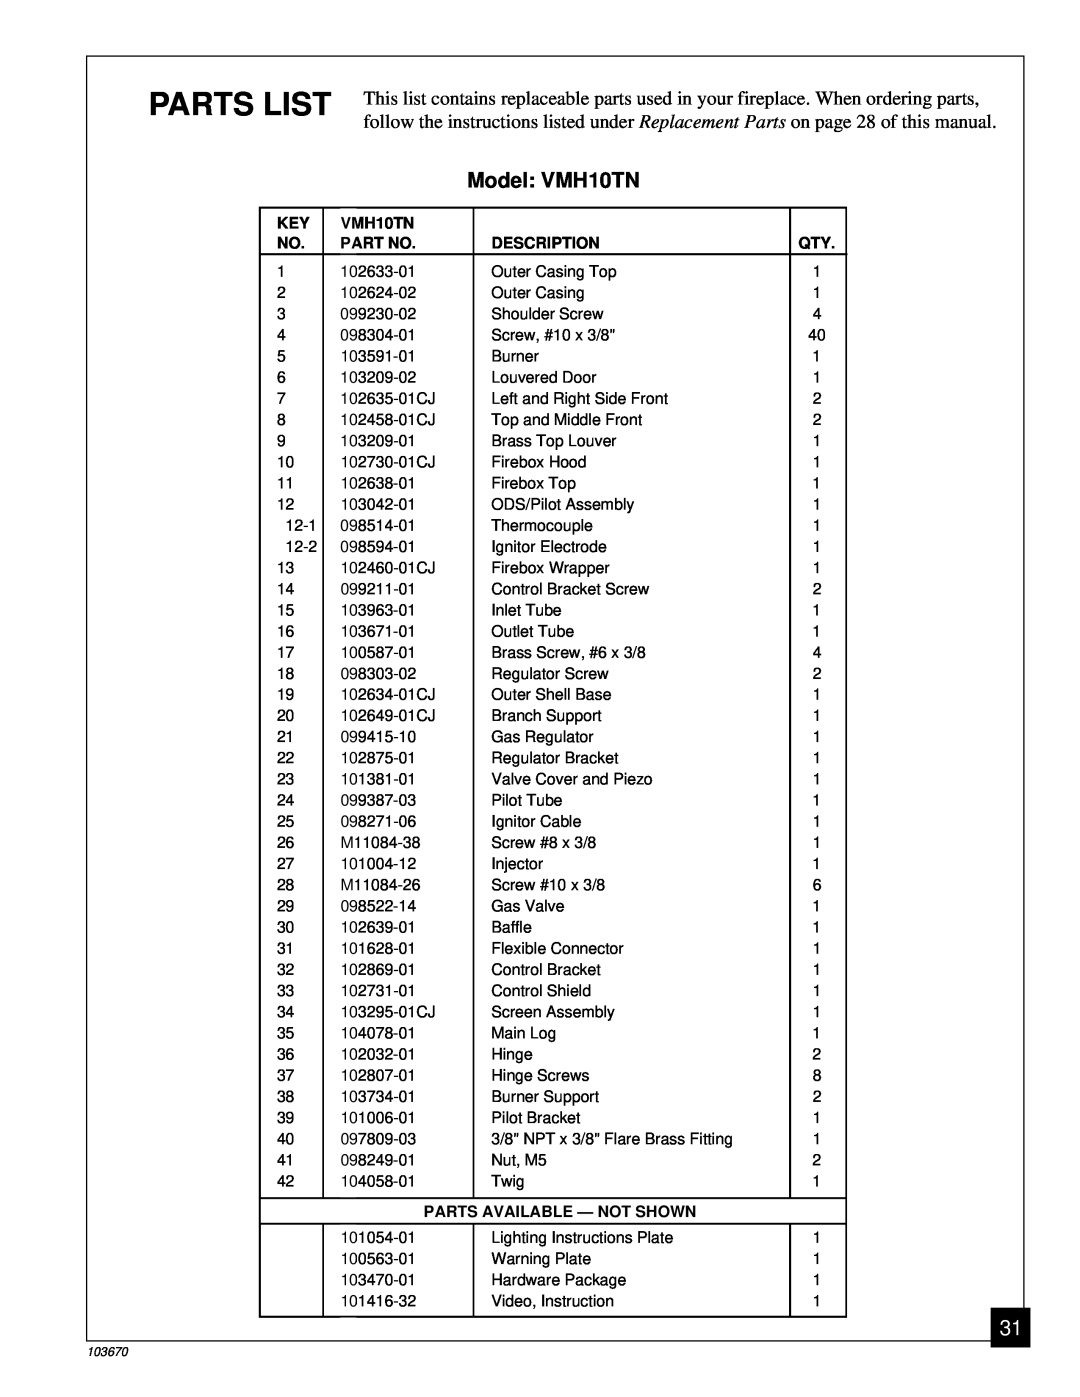 Vanguard Heating installation manual Parts List, Model VMH10TN 